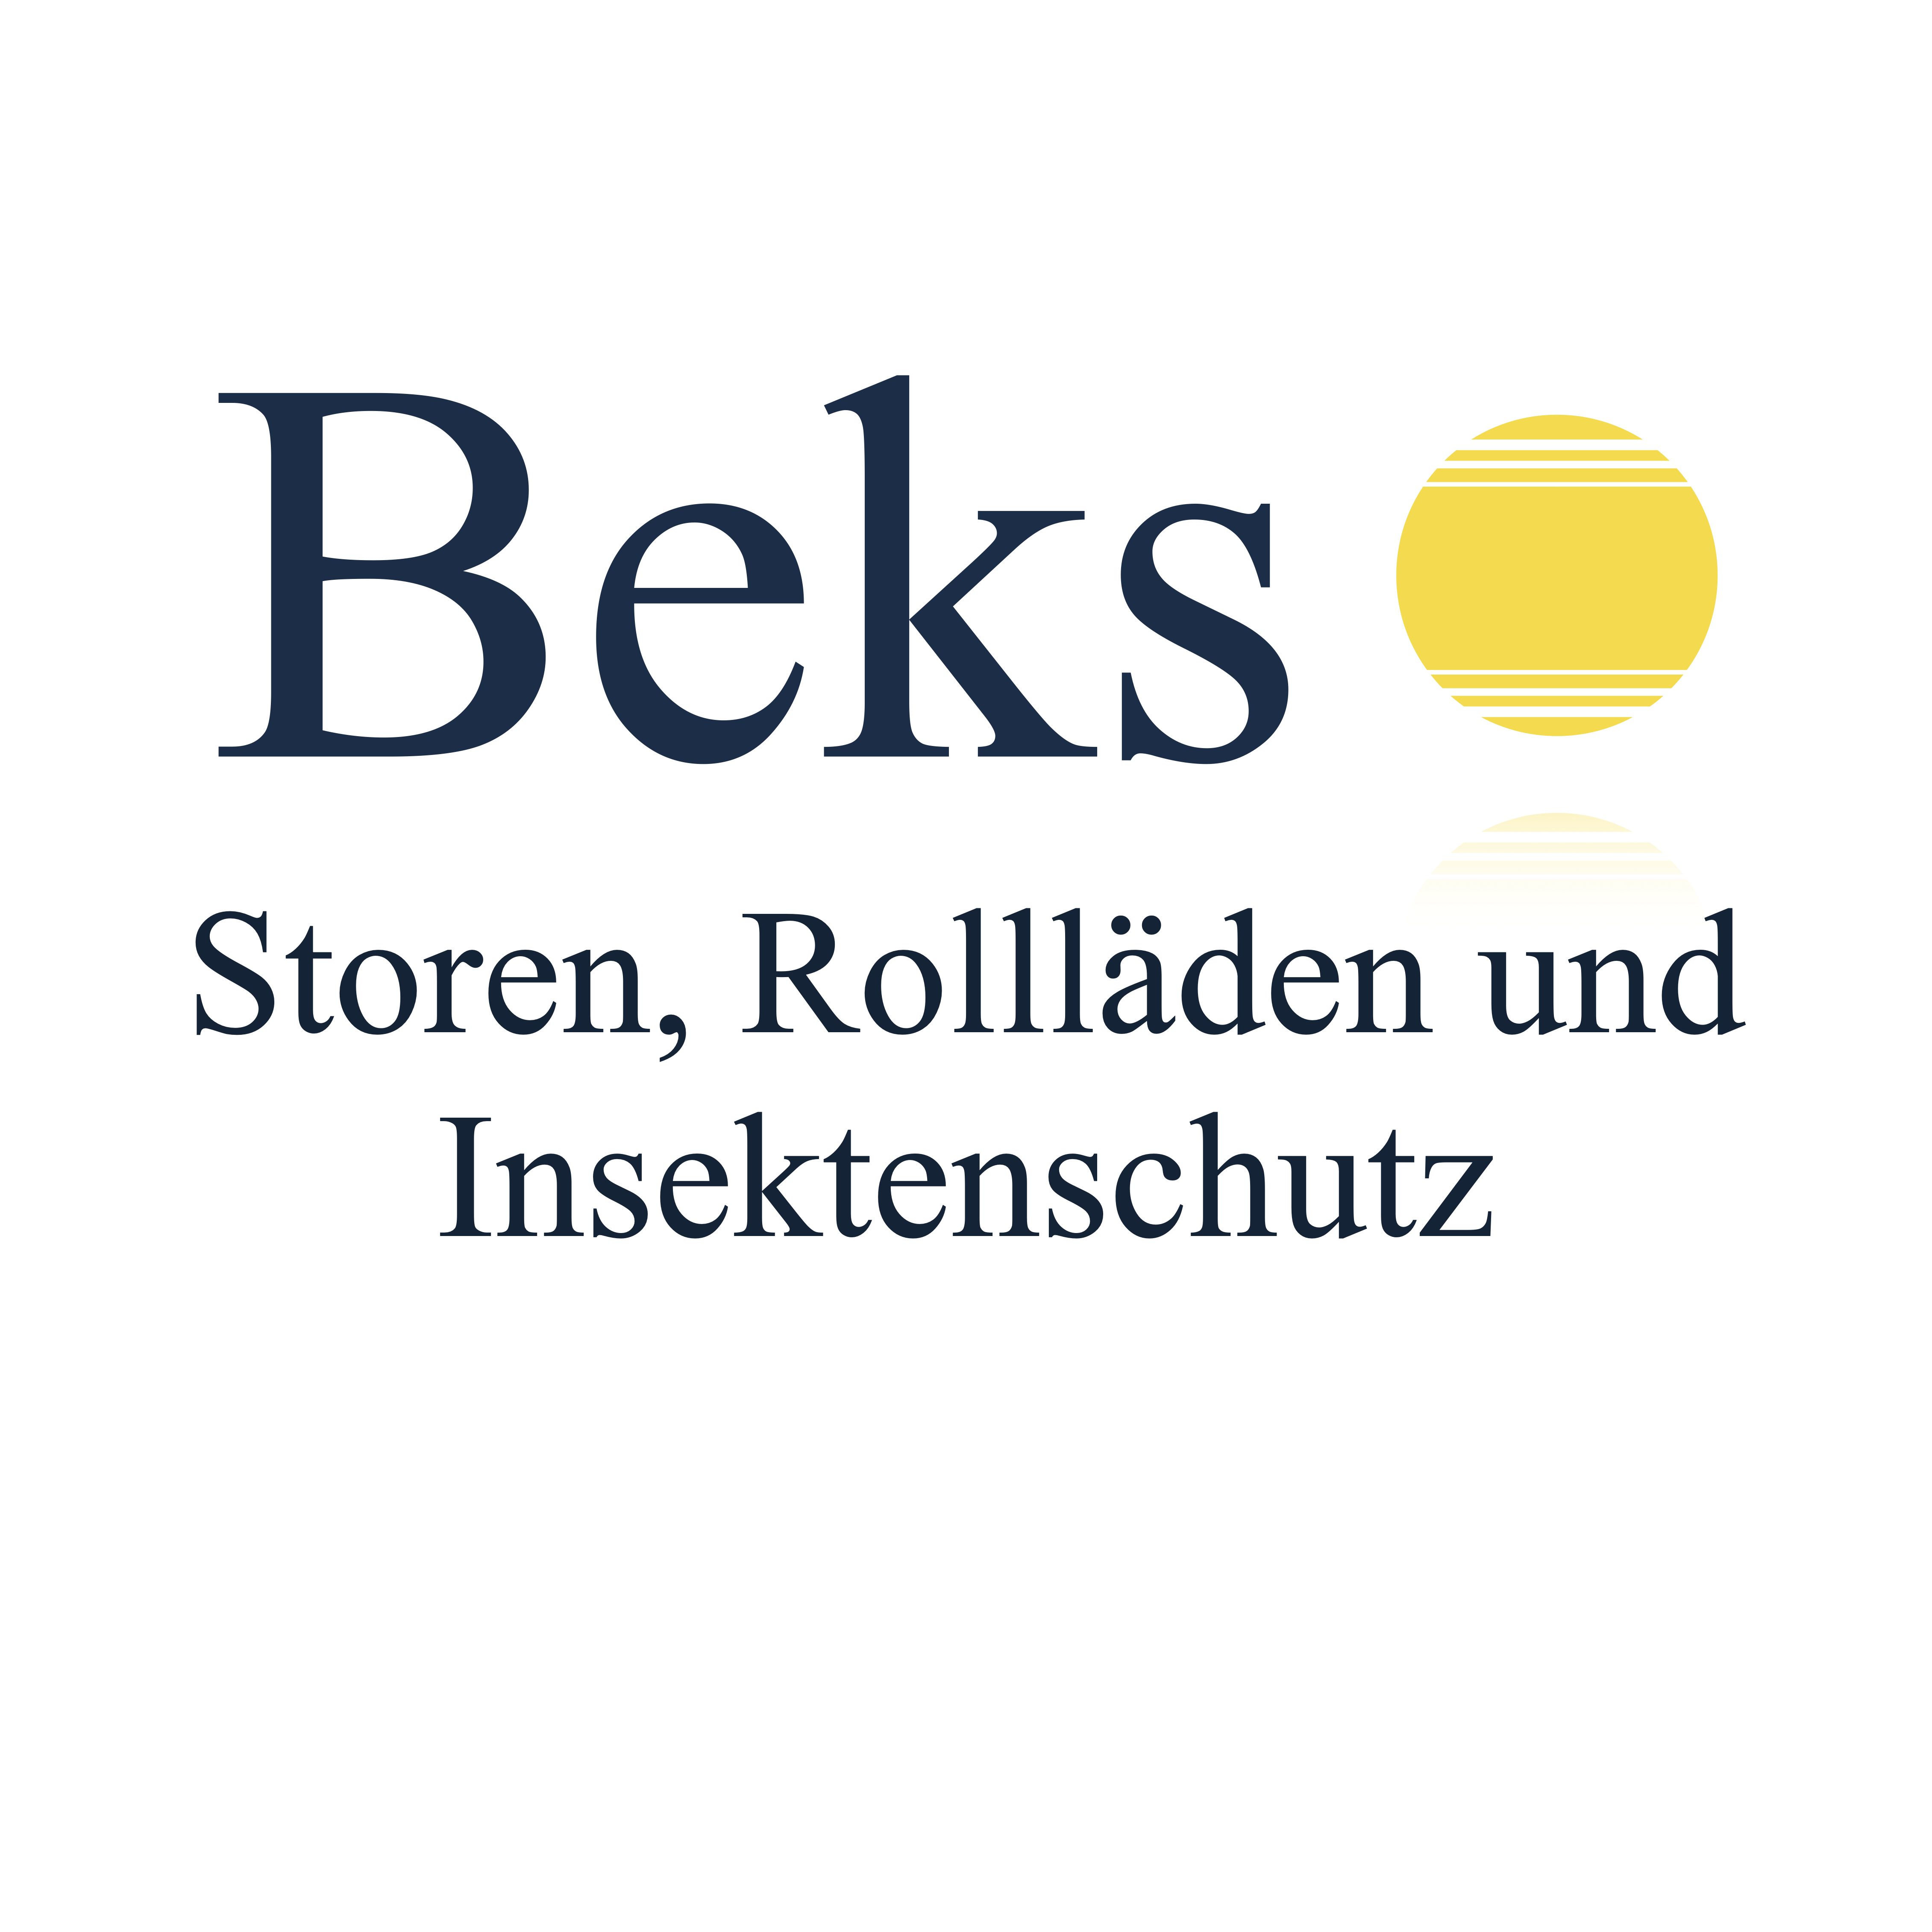 Beks Storen und Insektenschutz Logo